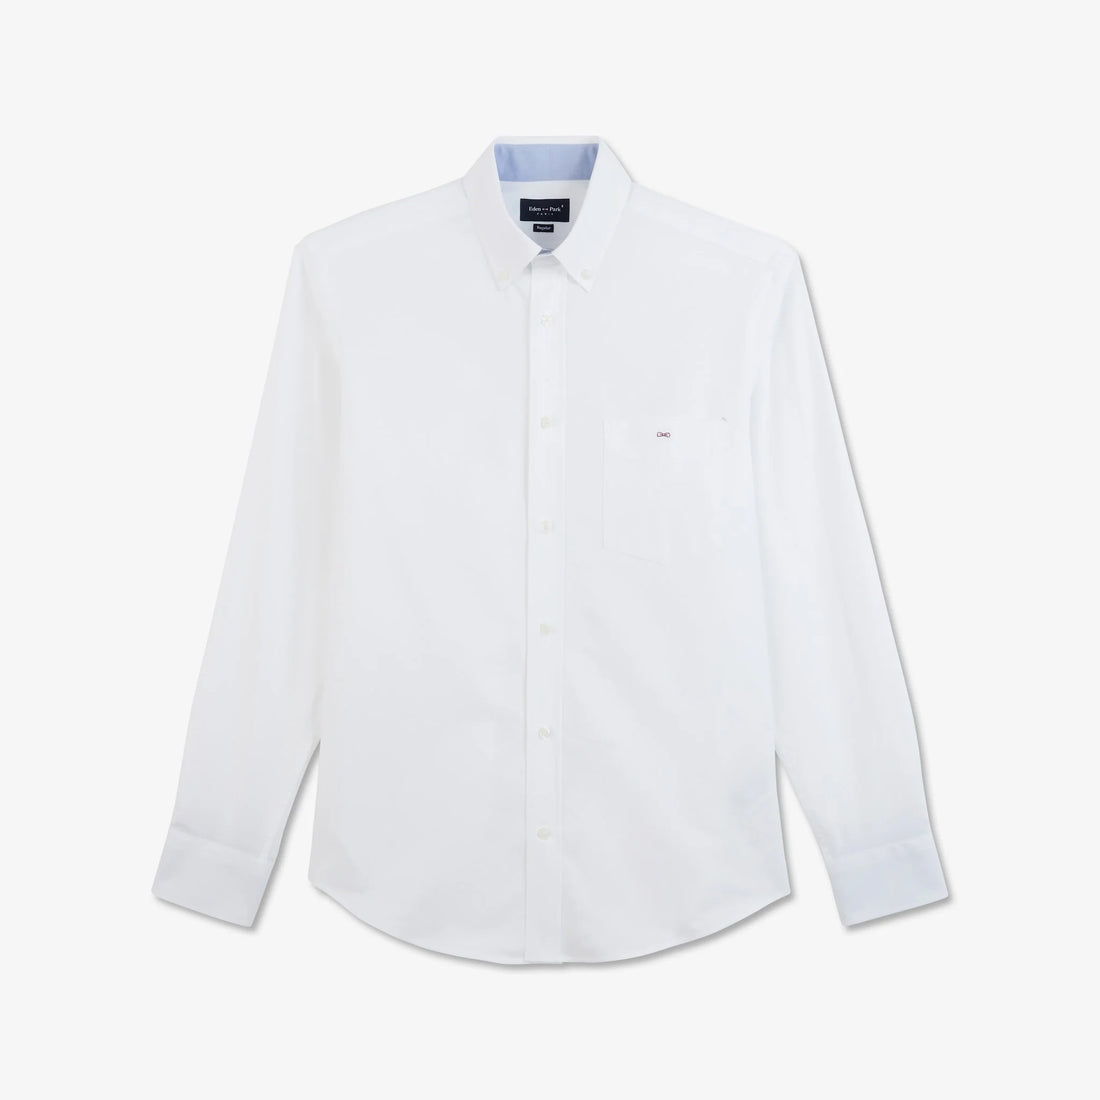 plain-white-cotton-shirt_ppshiche0020_bc_02